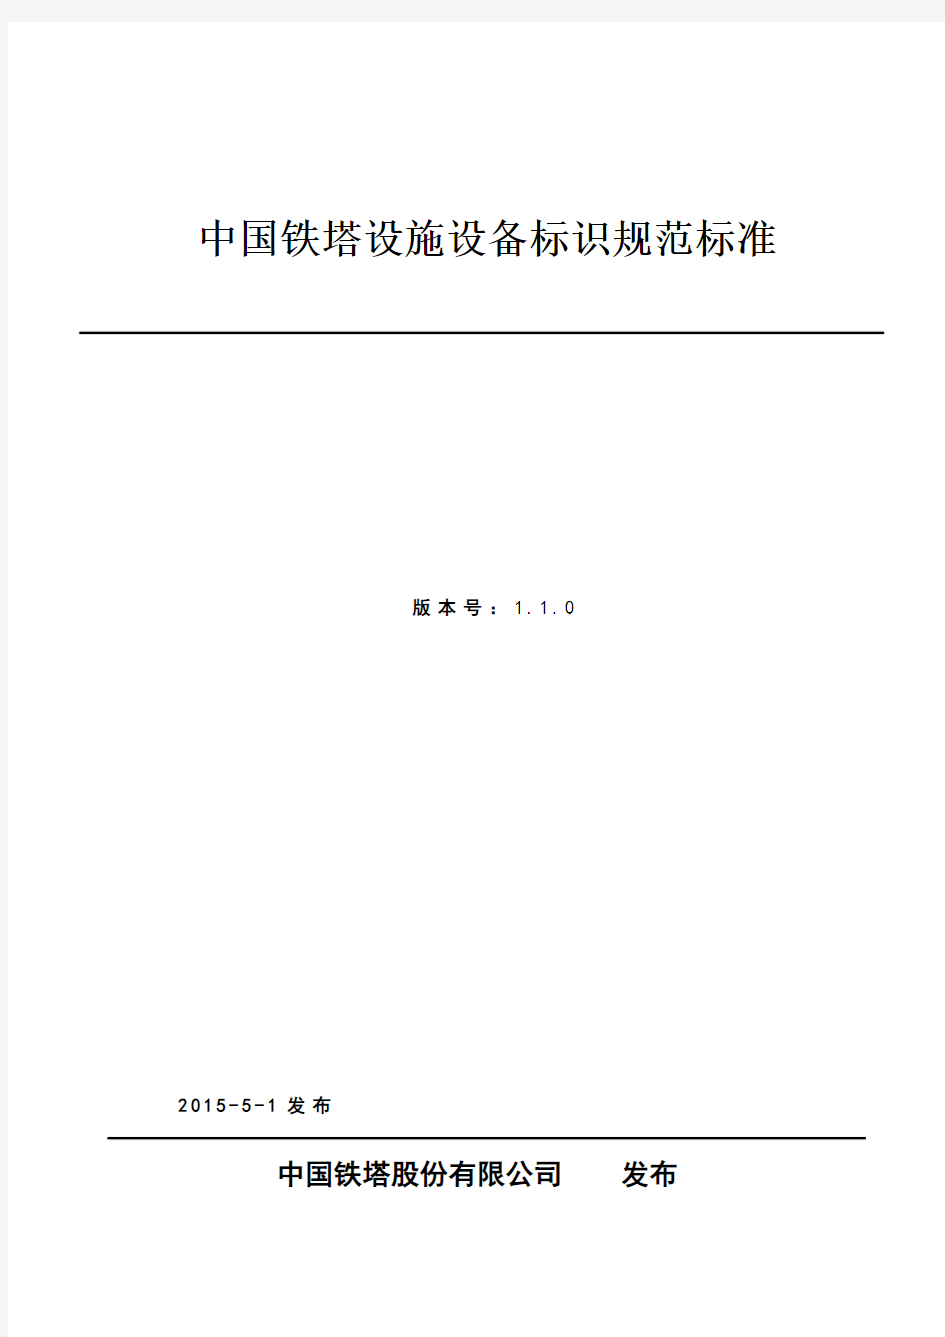 中国铁塔设施设备标识规范标准